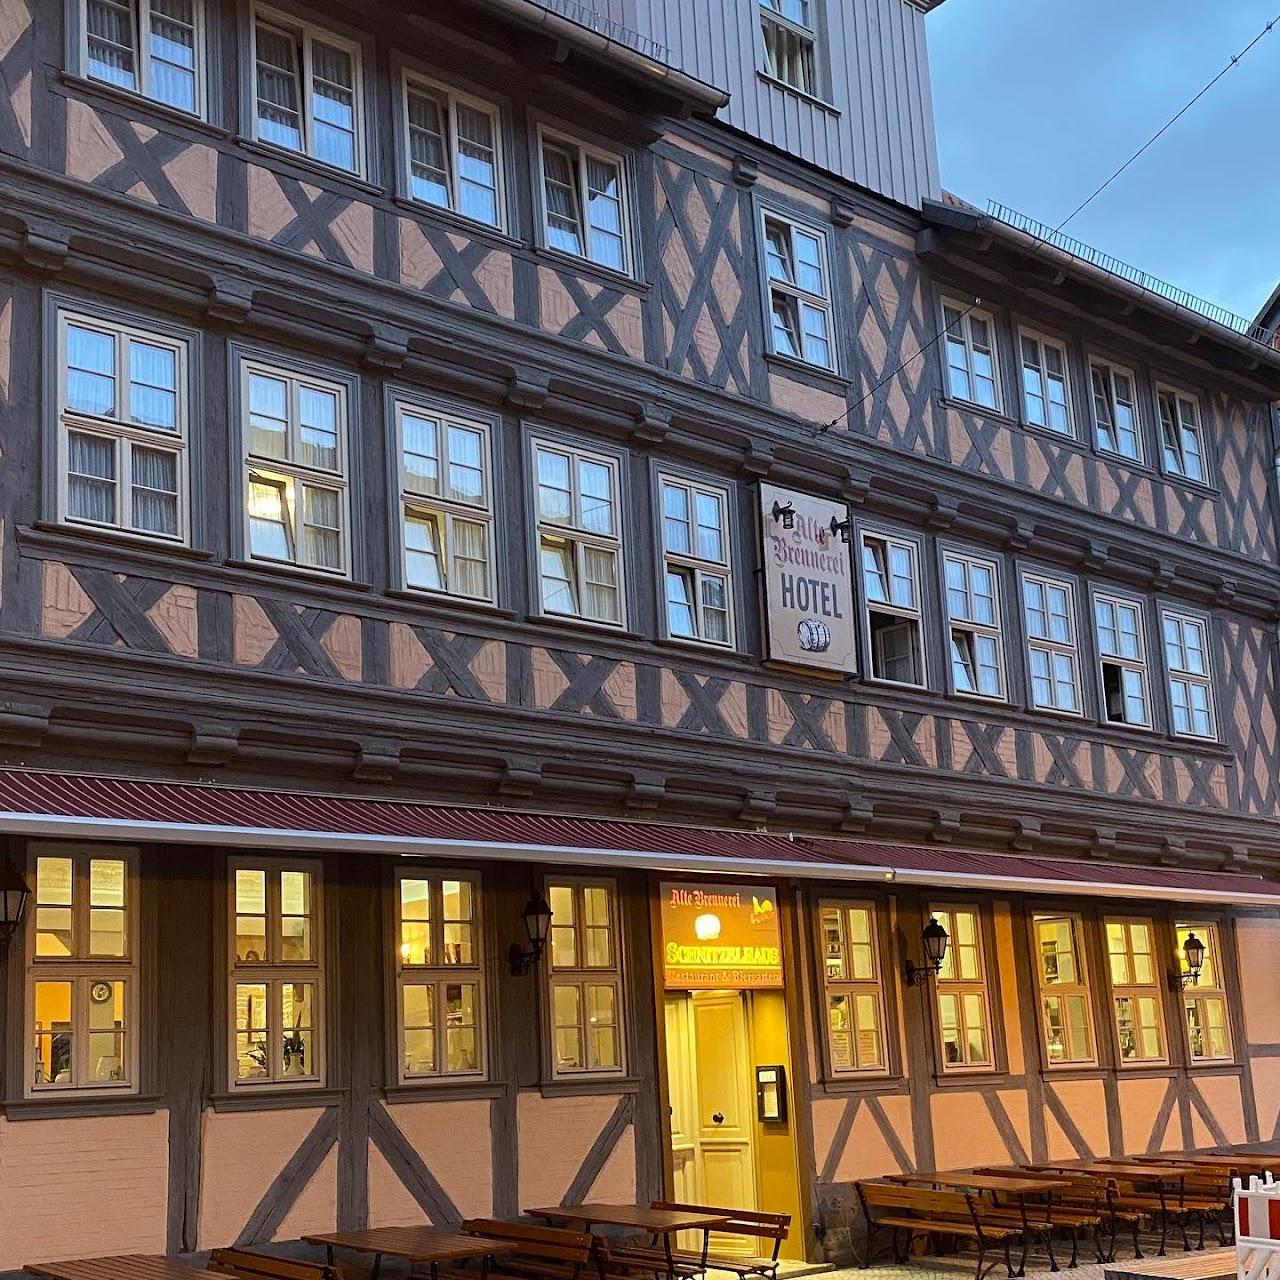 Restaurant "HOTEL ALTE BRENNEREI" in Wernigerode